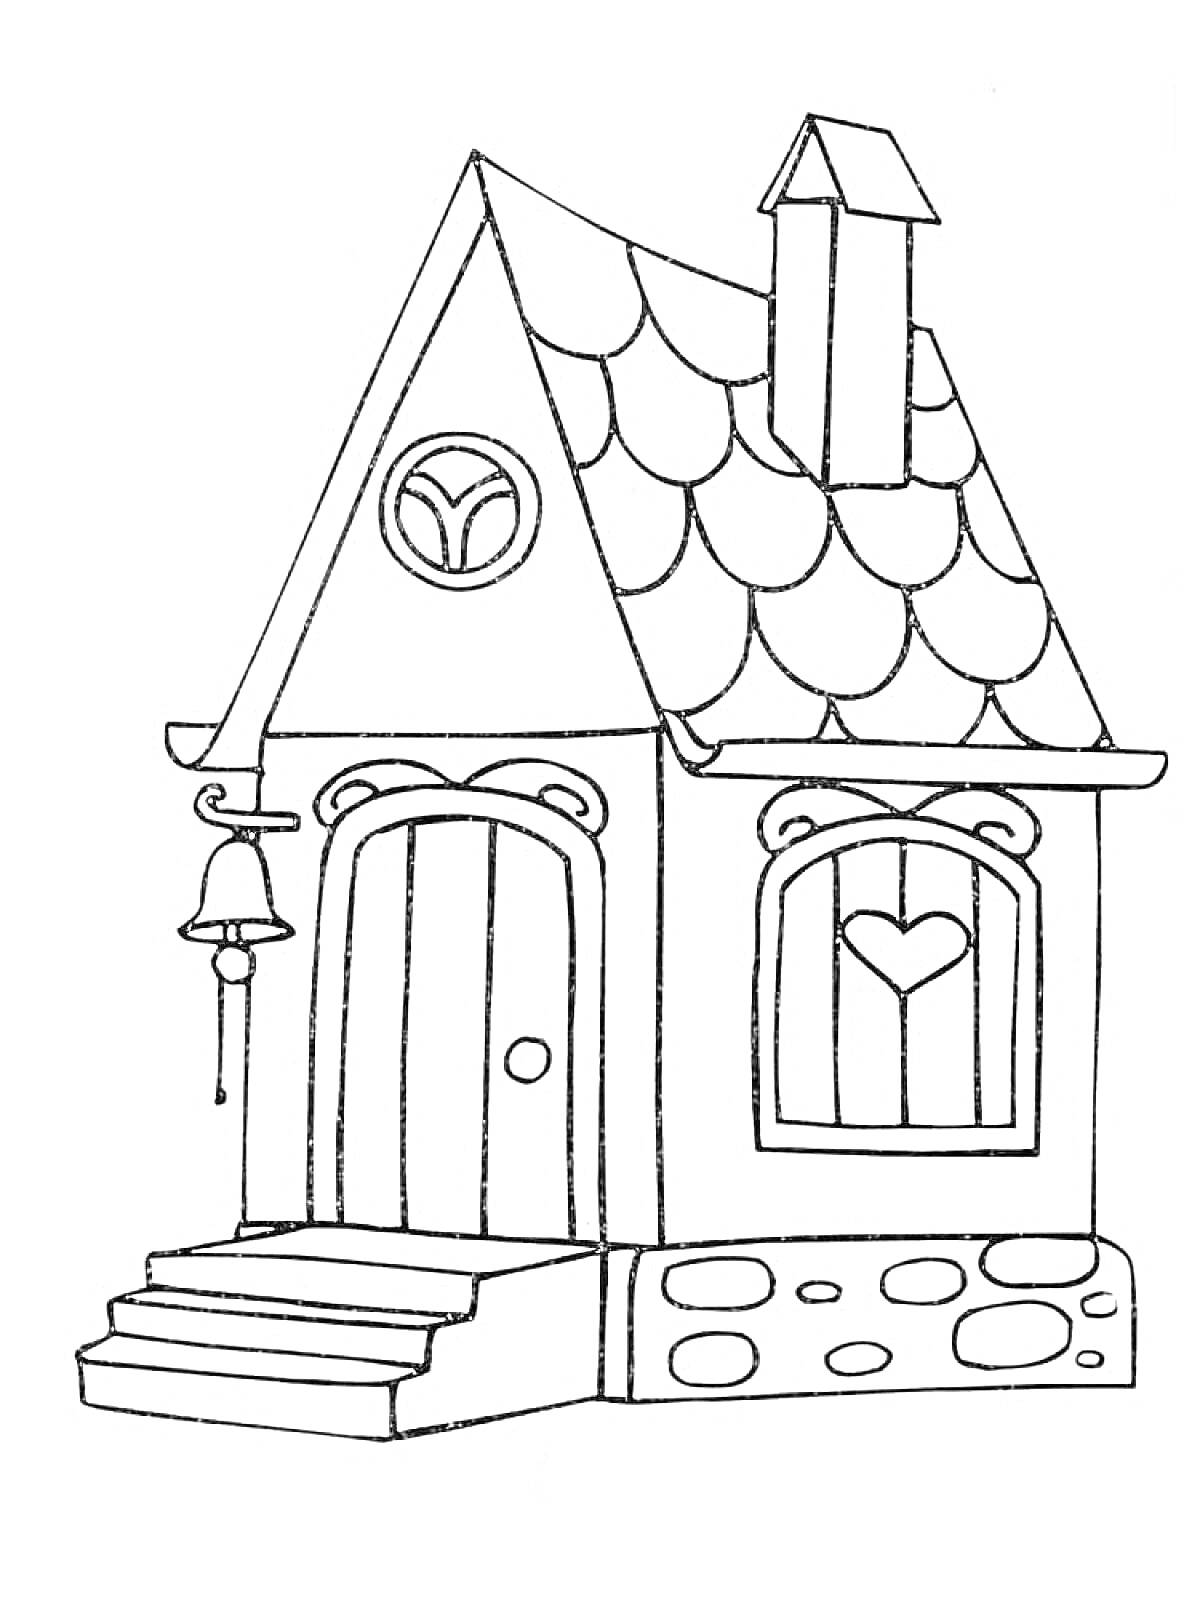 Домик с арочными дверьми и окнами, окружённый каменным фундаментом, с колоколом и лестницей